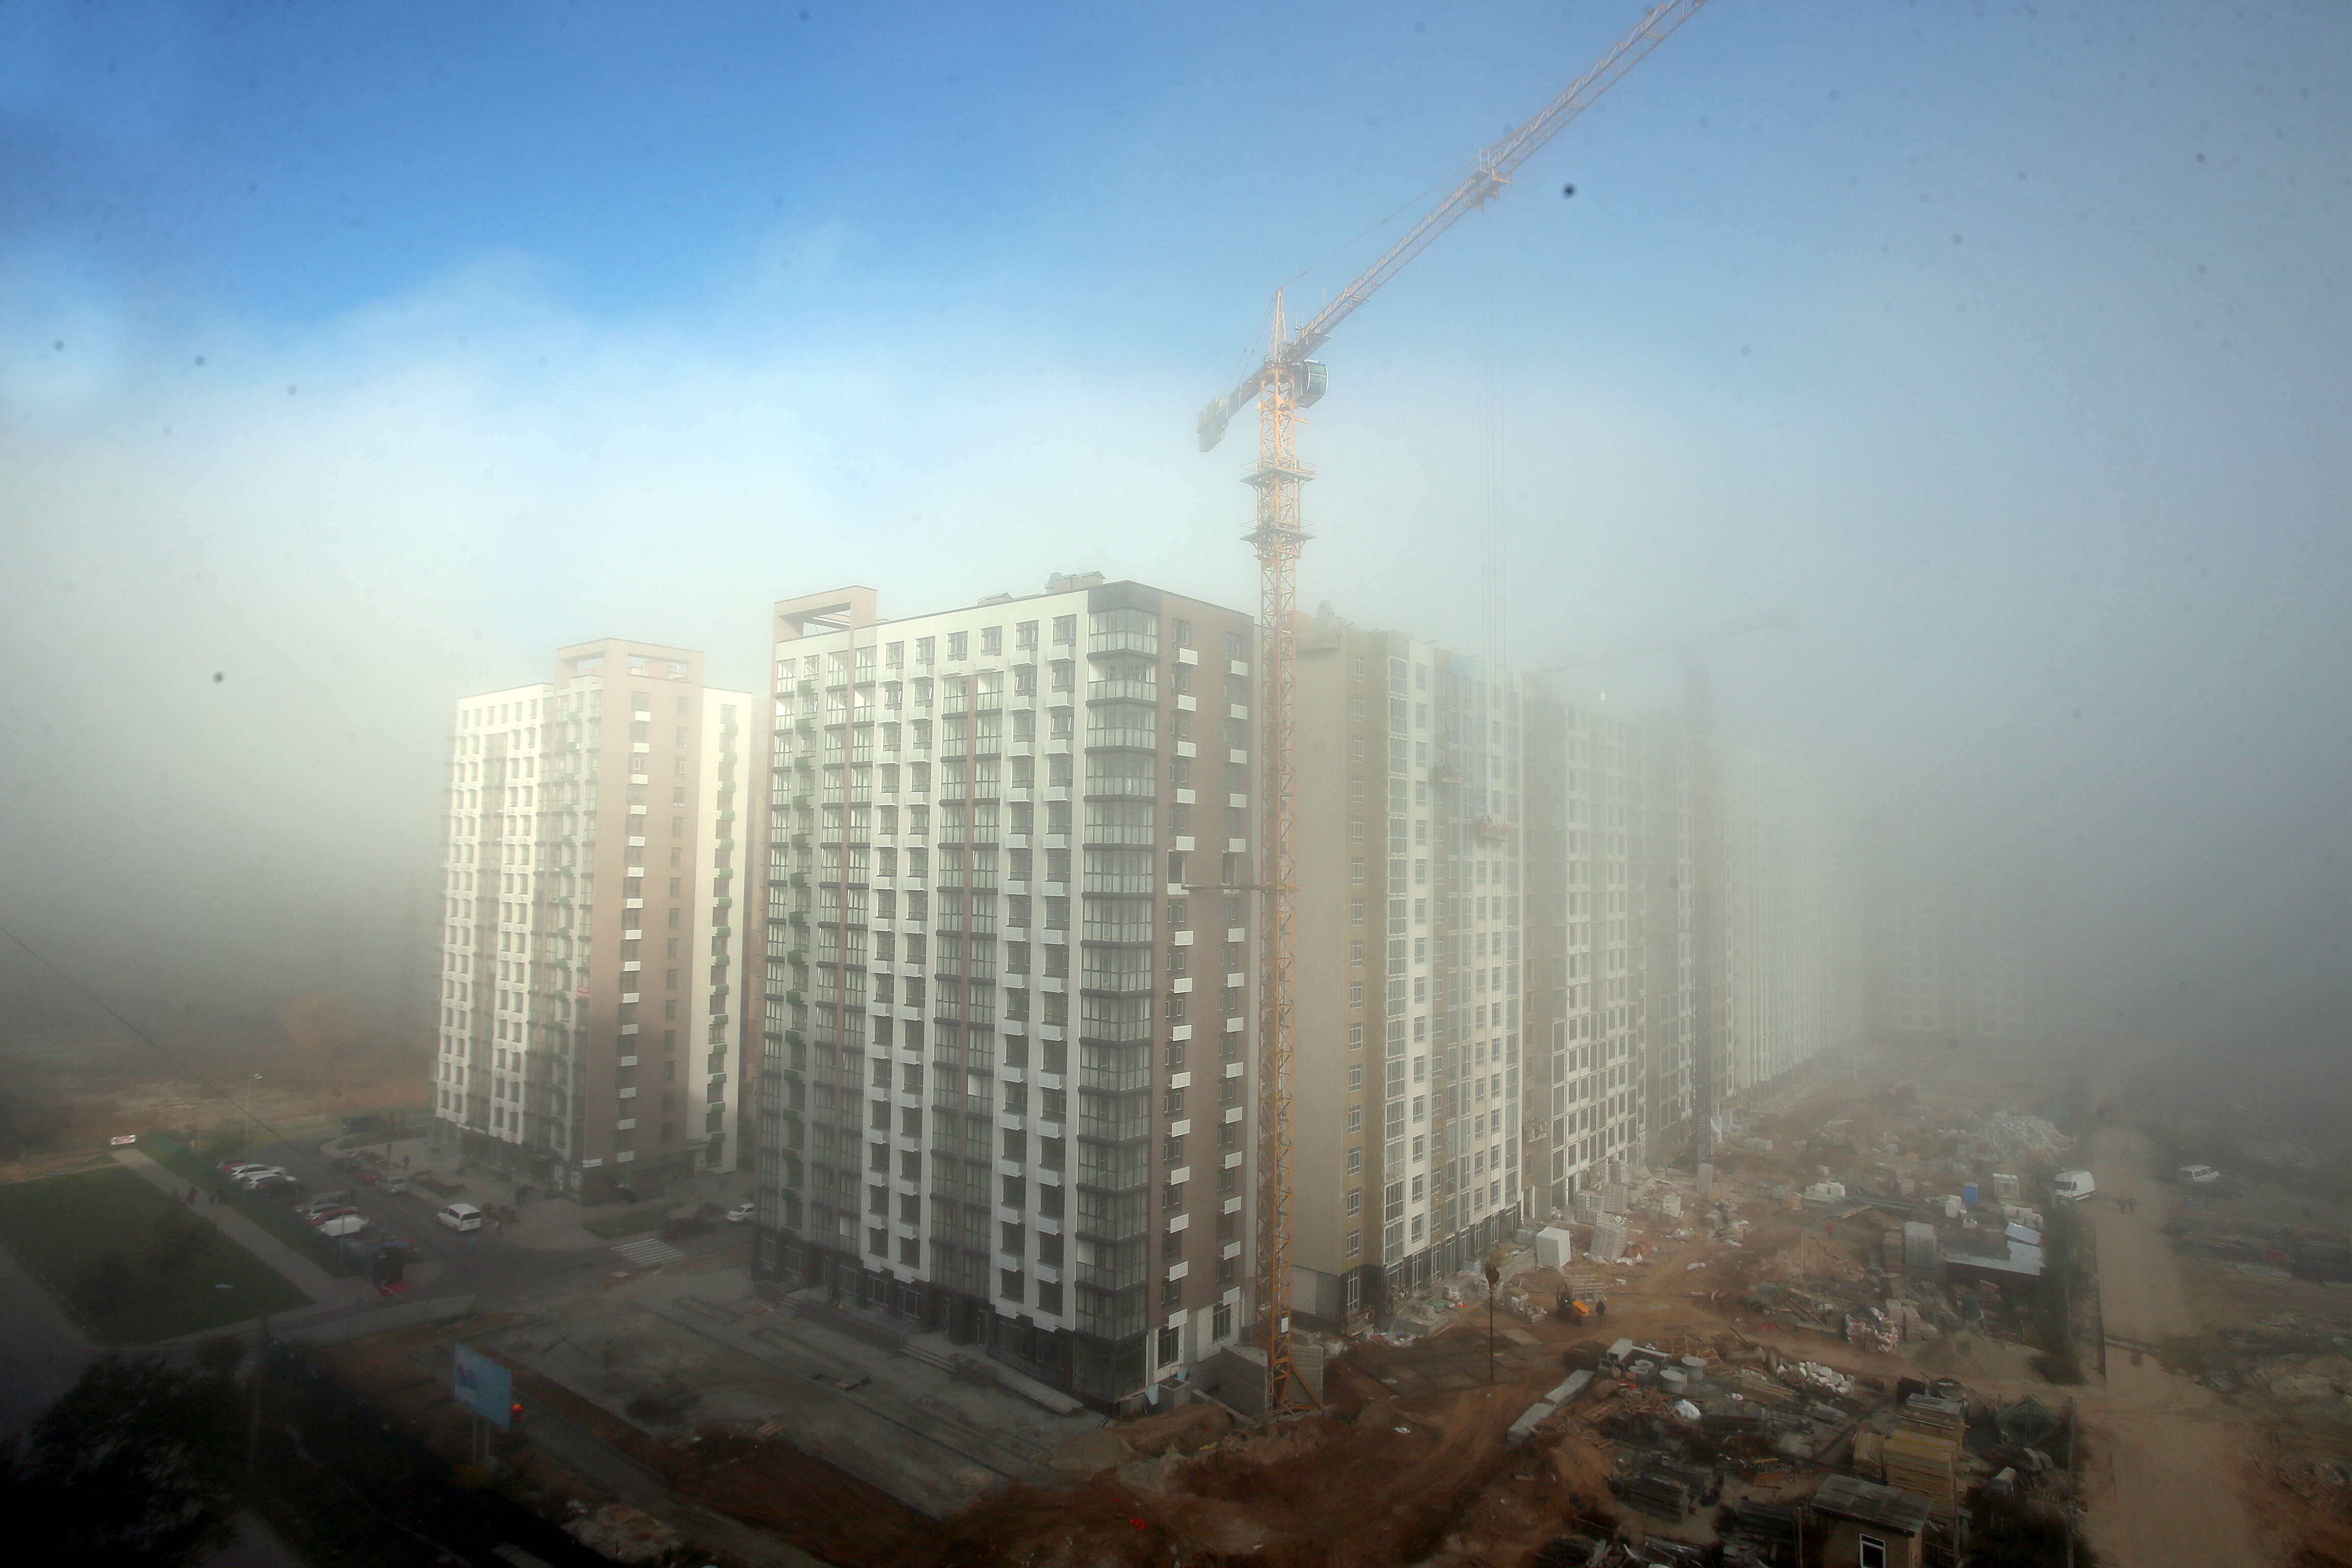  Цены на жилье в Украине: как рынок недвижимости реагирует на выборы и курс валют